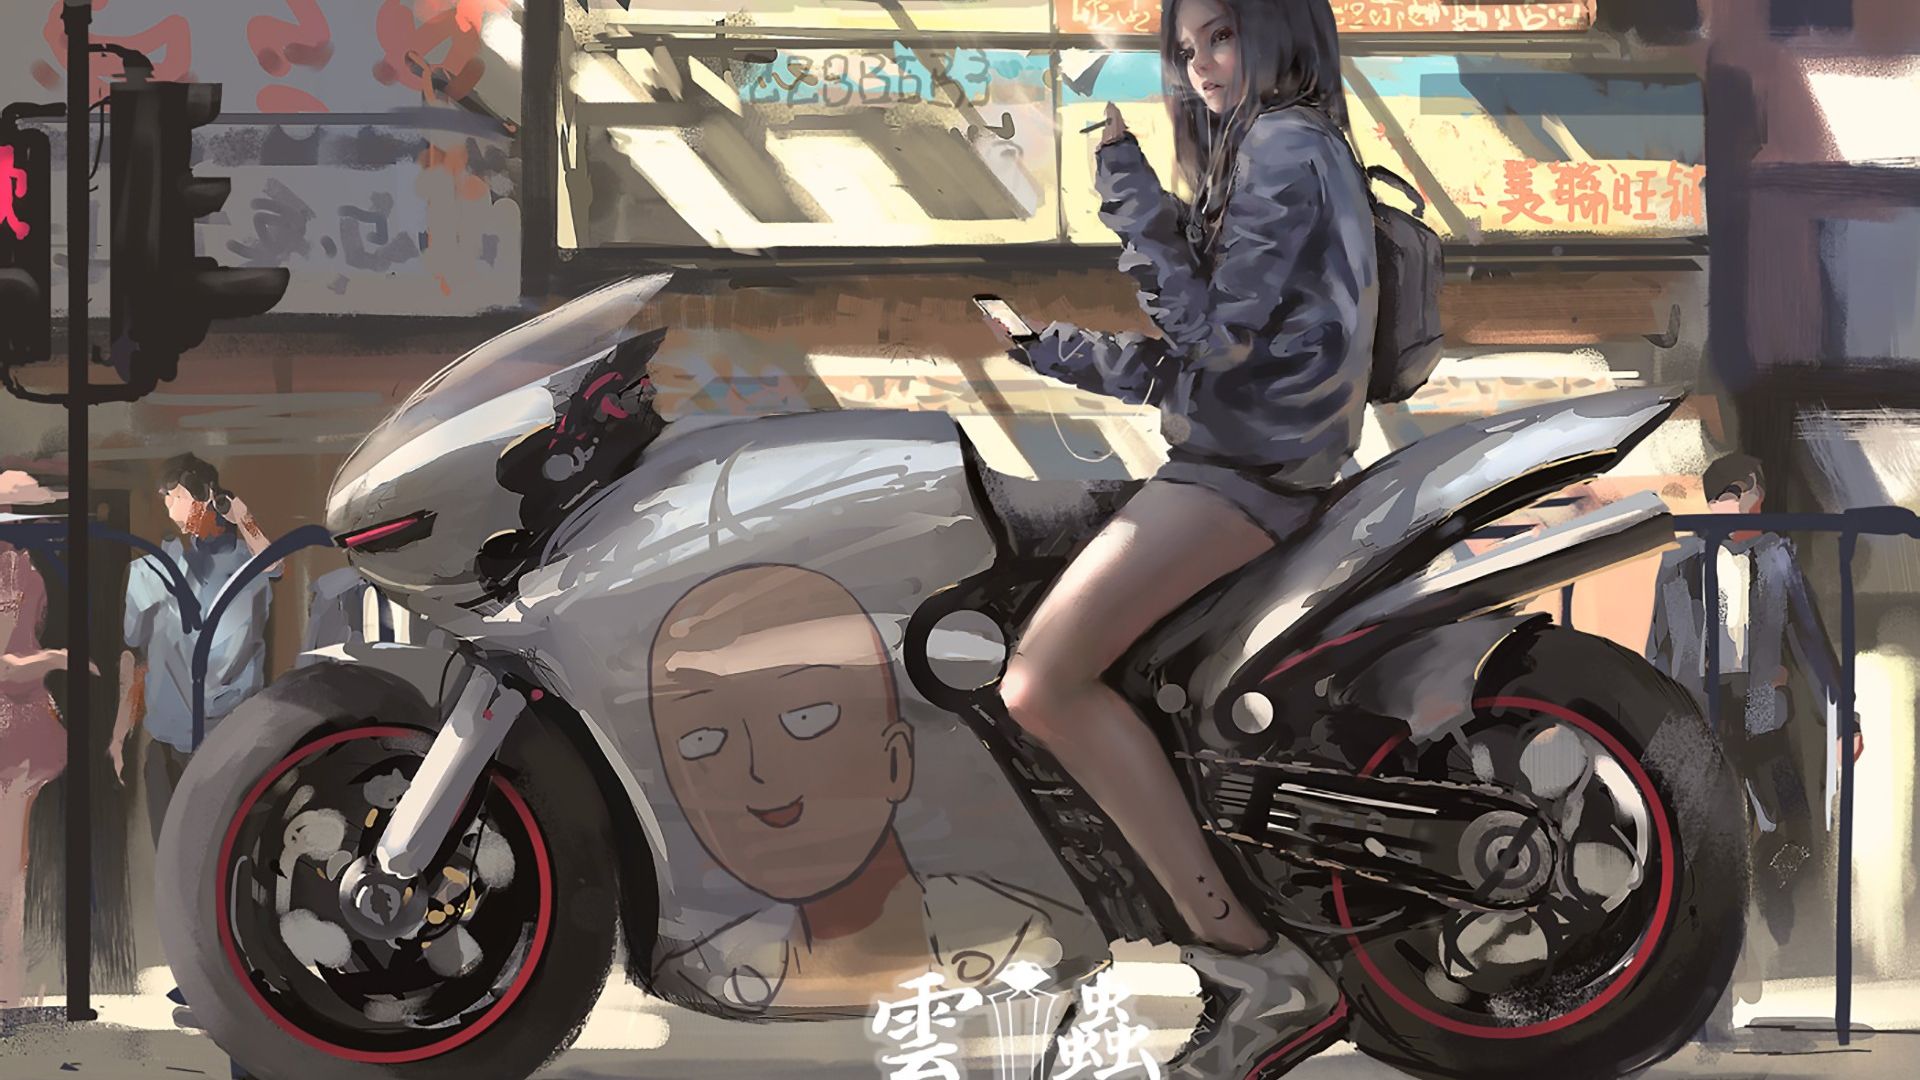 Wallpaper One punch man anime girl on bike, anime artwork